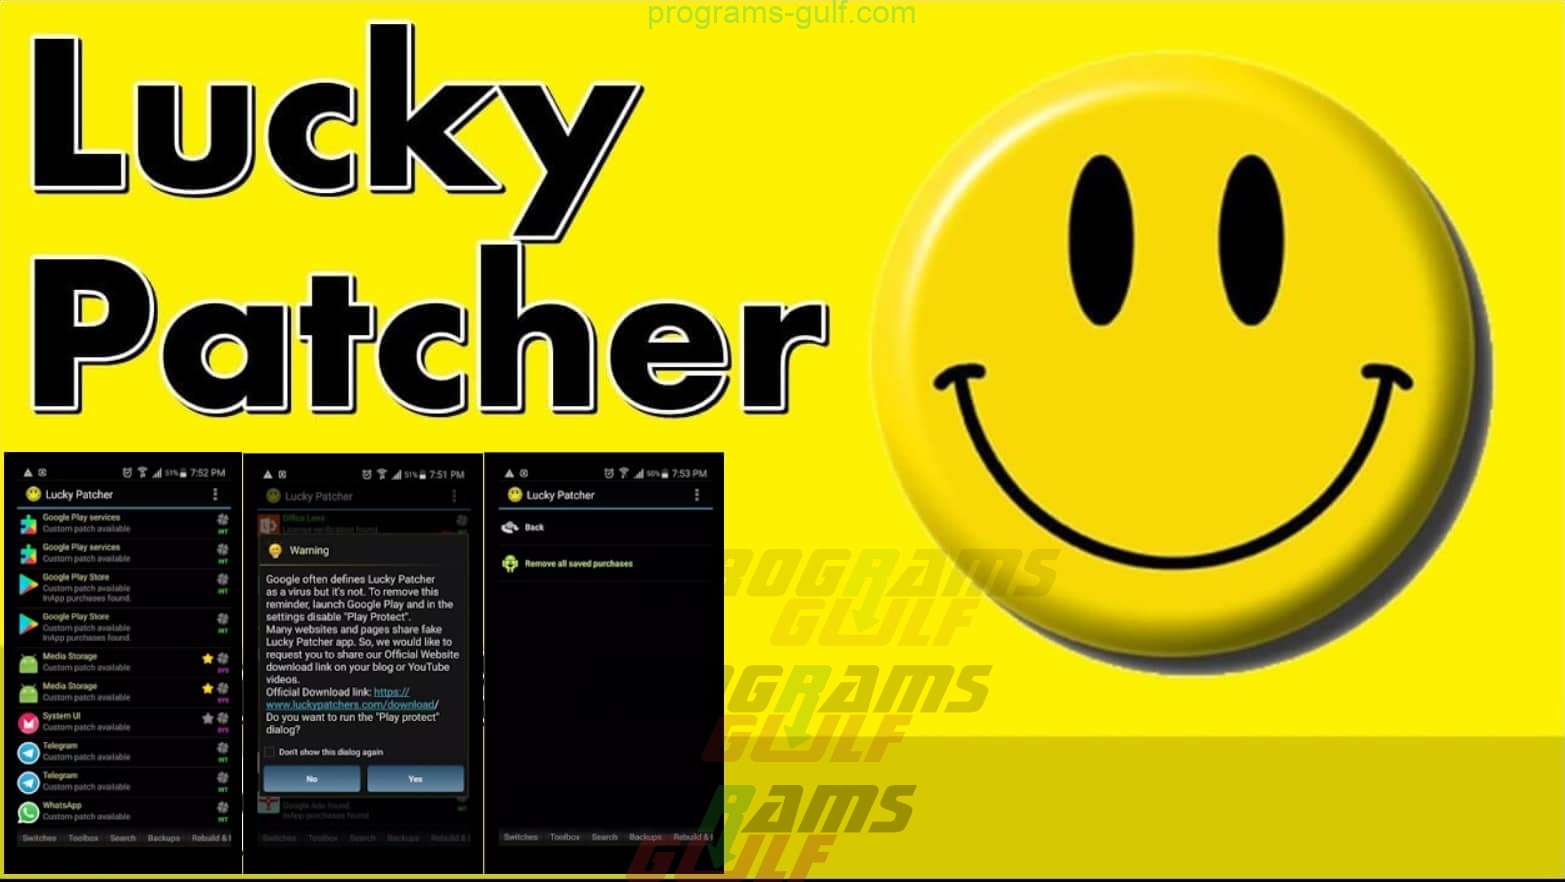 تحميل برنامج لوكي باتشر lucky patcher برابط مباشر